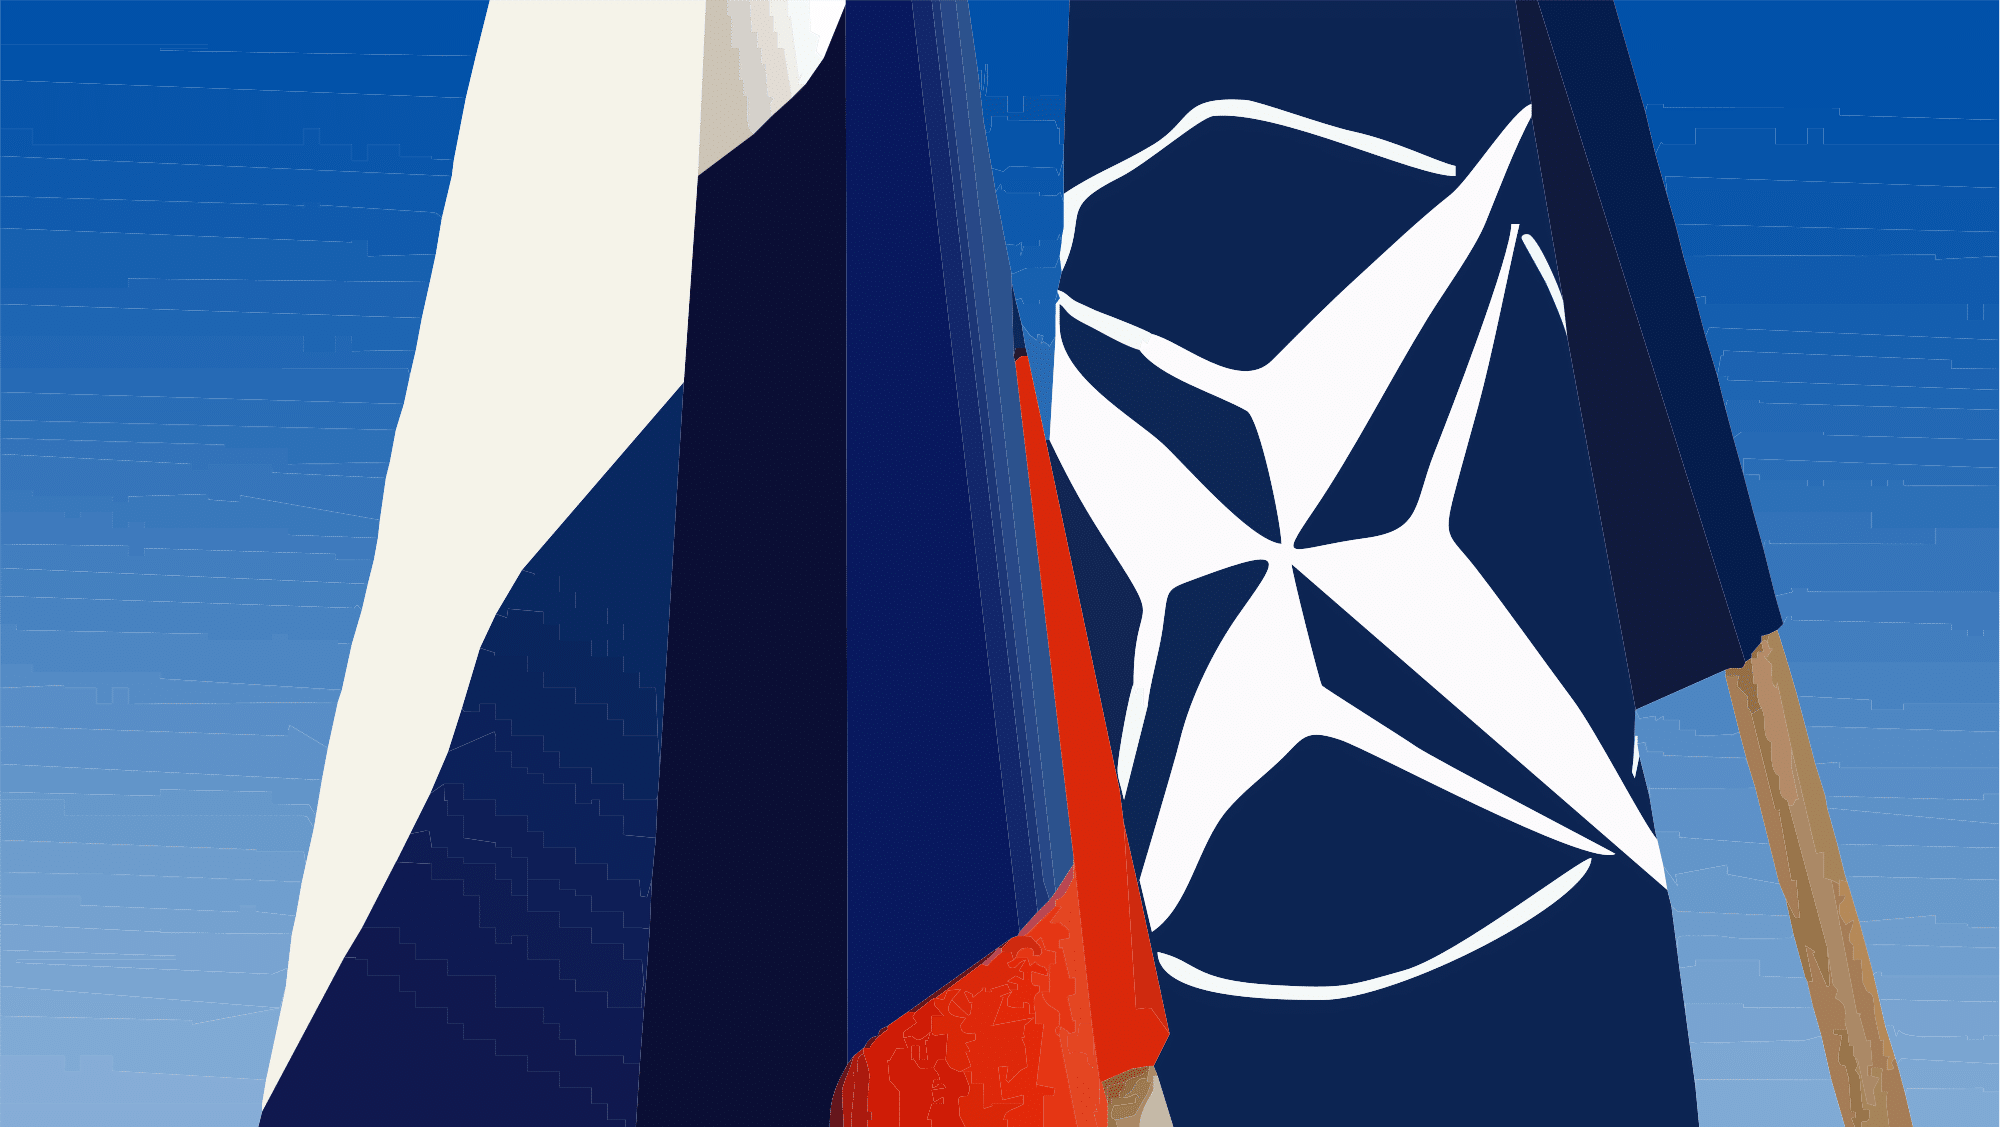 Bandera Rusa y de la OTAN